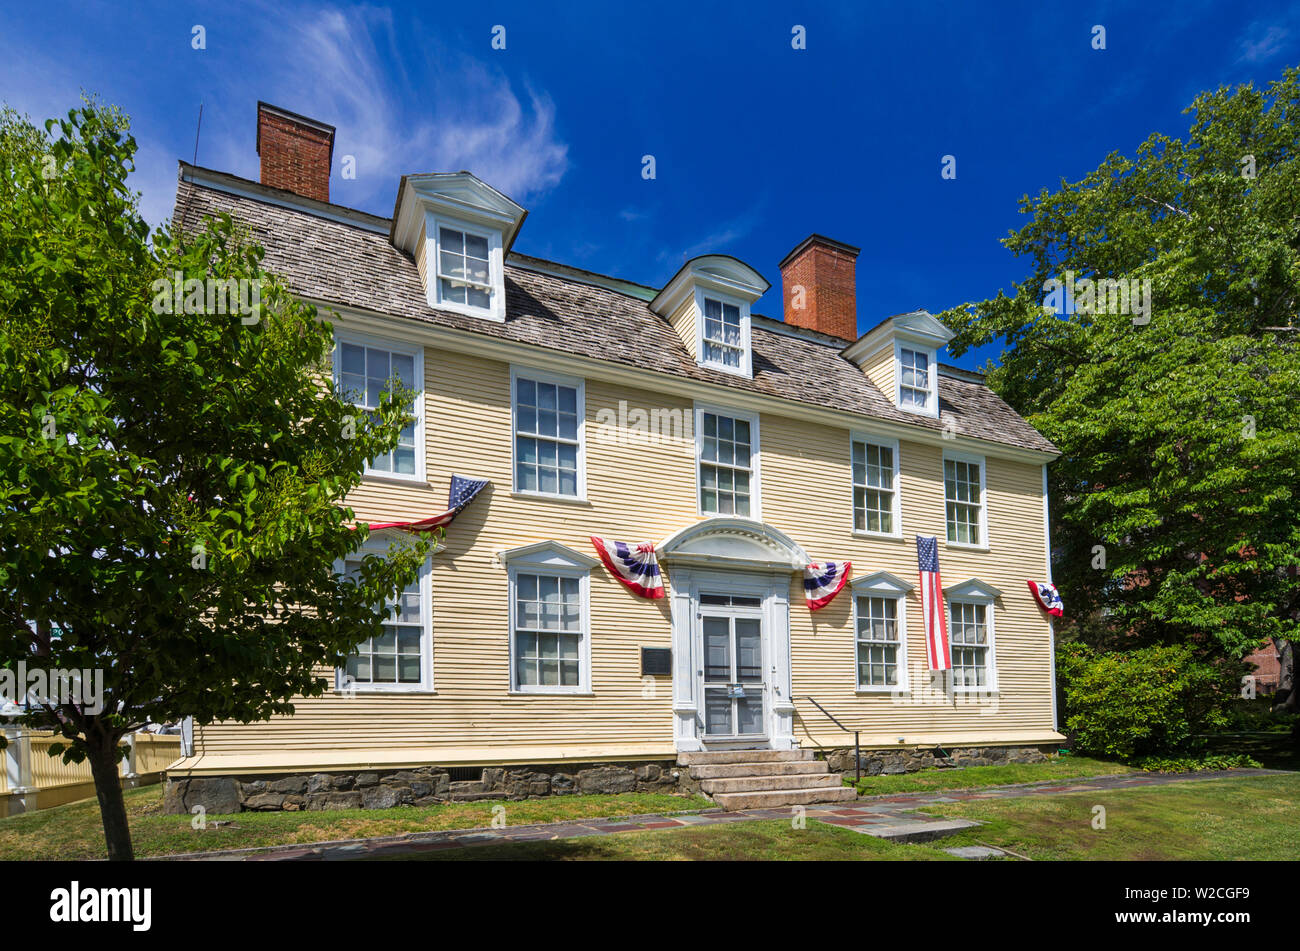 USA, New Hampshire, Portsmouth, John Paul Jones House, une maison d'héros naval de la Révolution américaine Banque D'Images